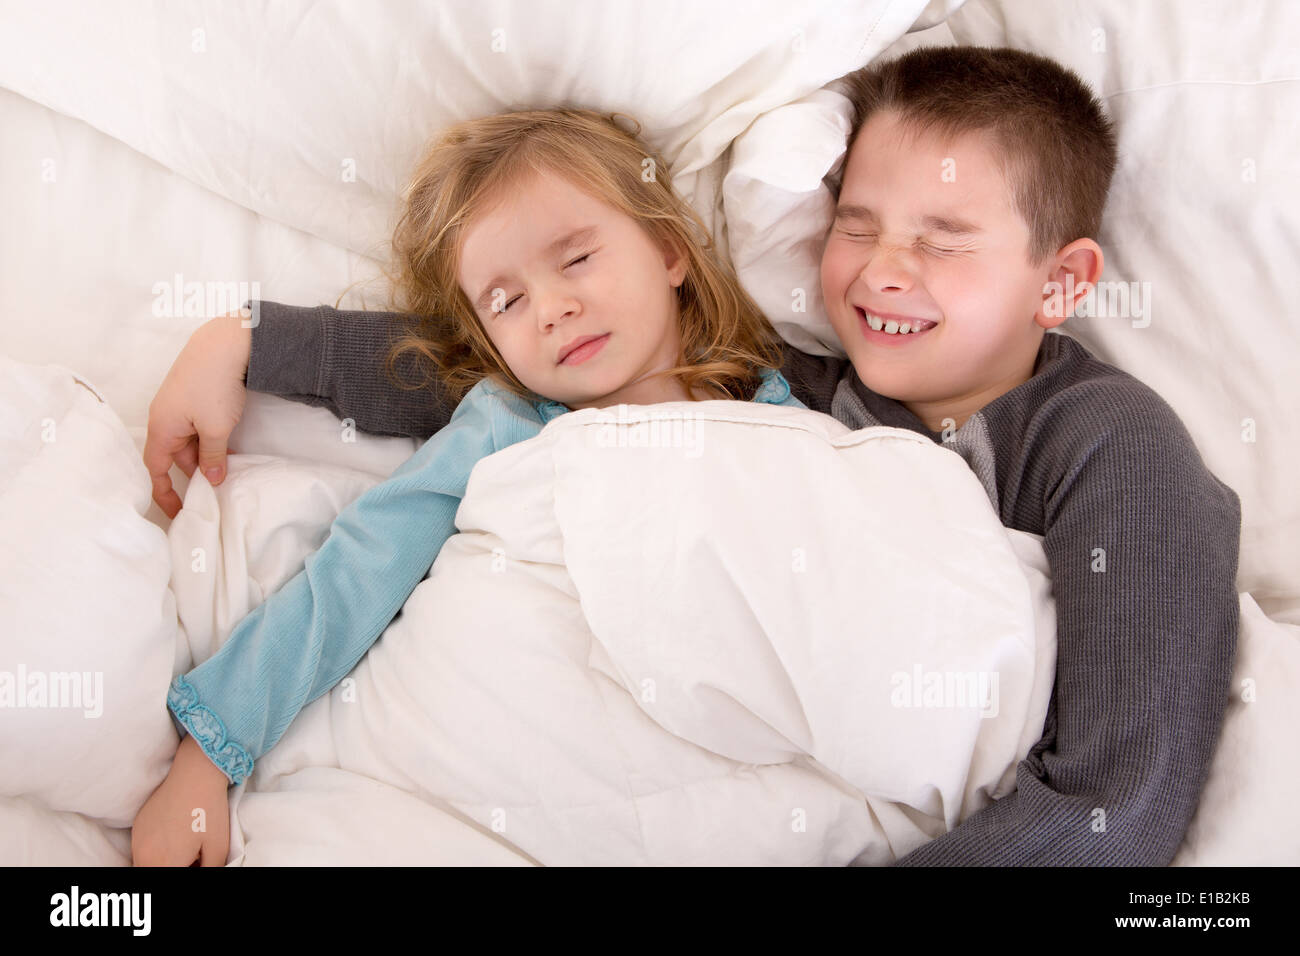 Брат пришел к сестре в постель. Мальчик с девочкой в постели. Кровать для мальчика и девочки в одной.